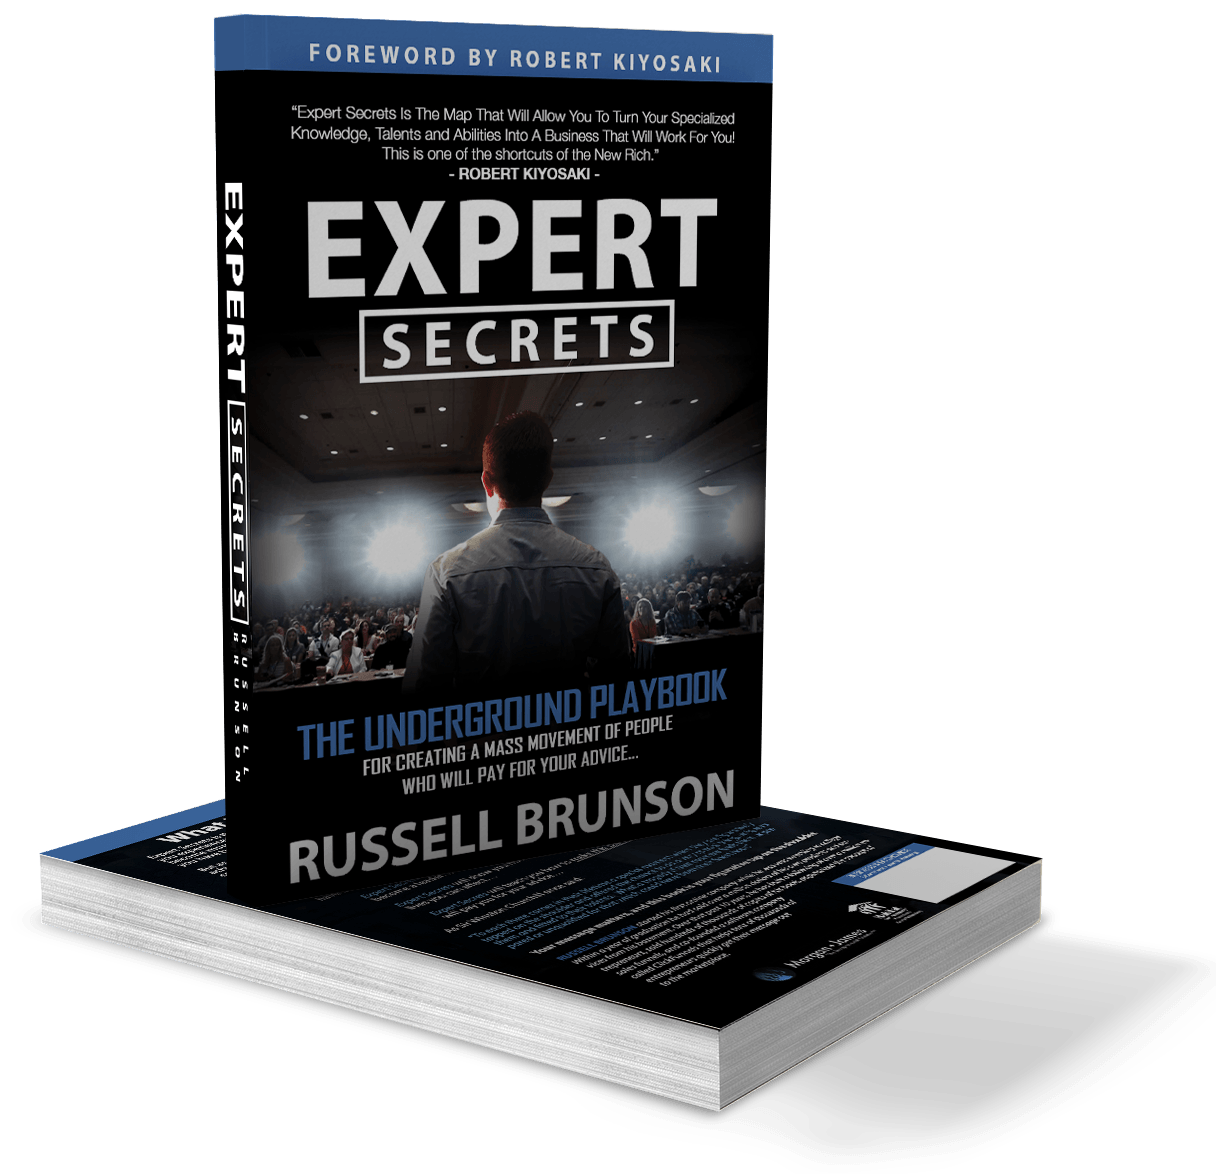 Free Expert Secrets Book Russell Brunson